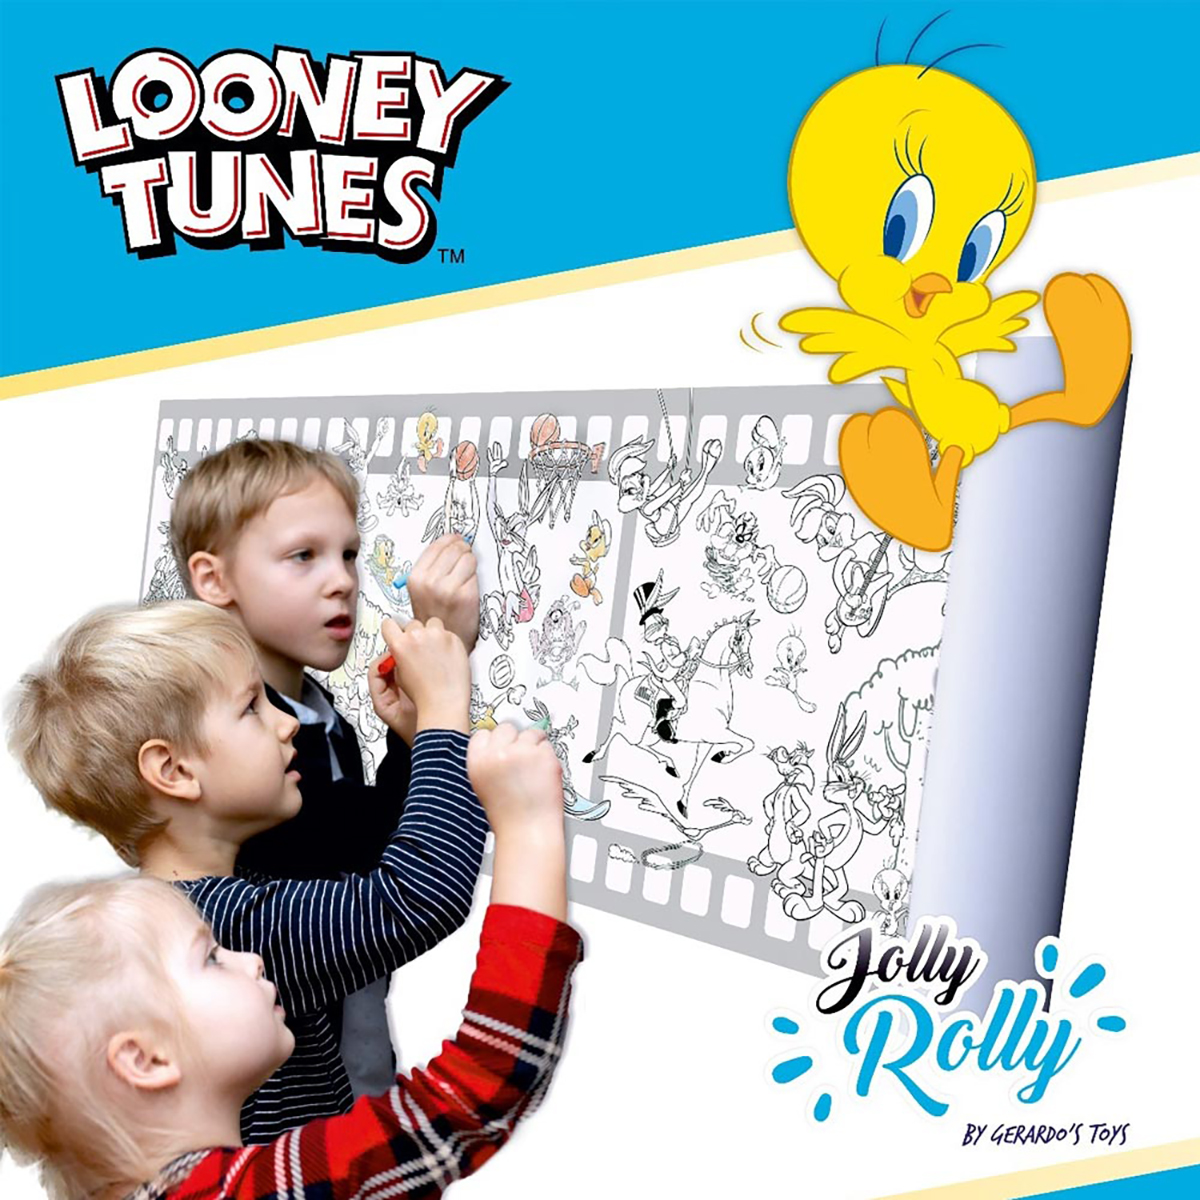 4 Spielset Sticker auf x Tunes Looney NOON Rolle cm mehrfarbig (30 Ausmal m),